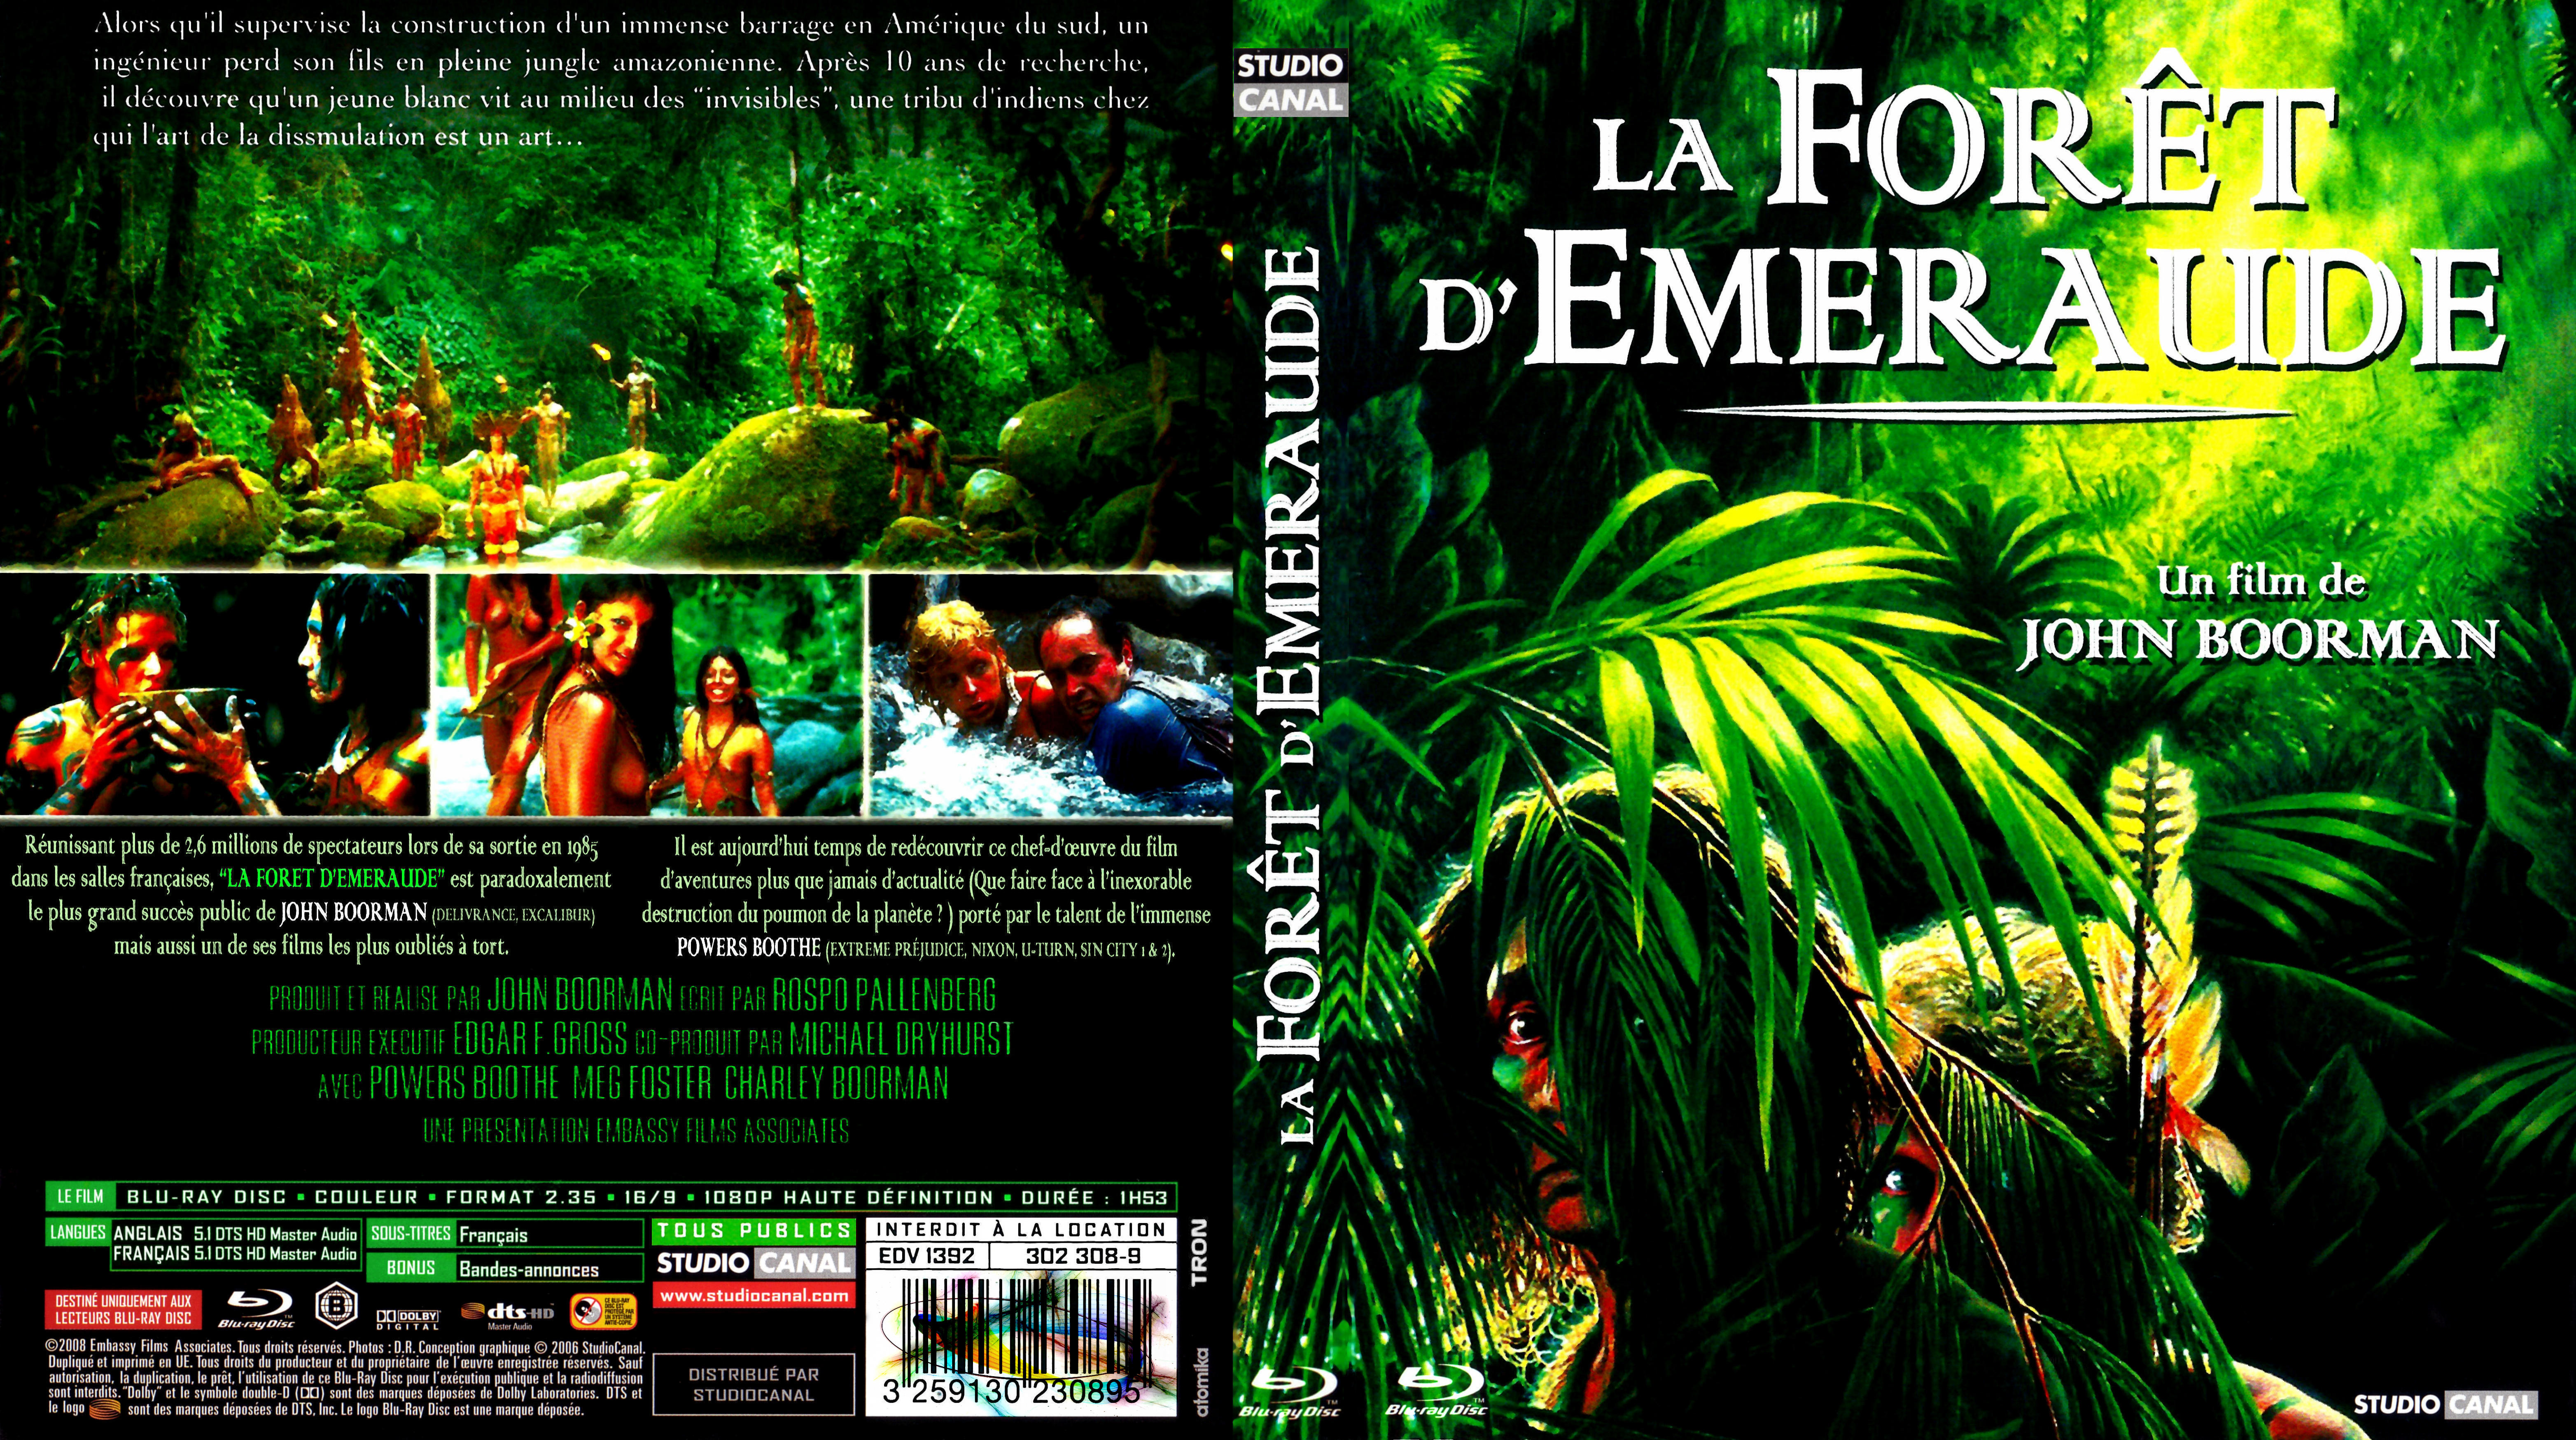 Jaquette DVD La Foret d